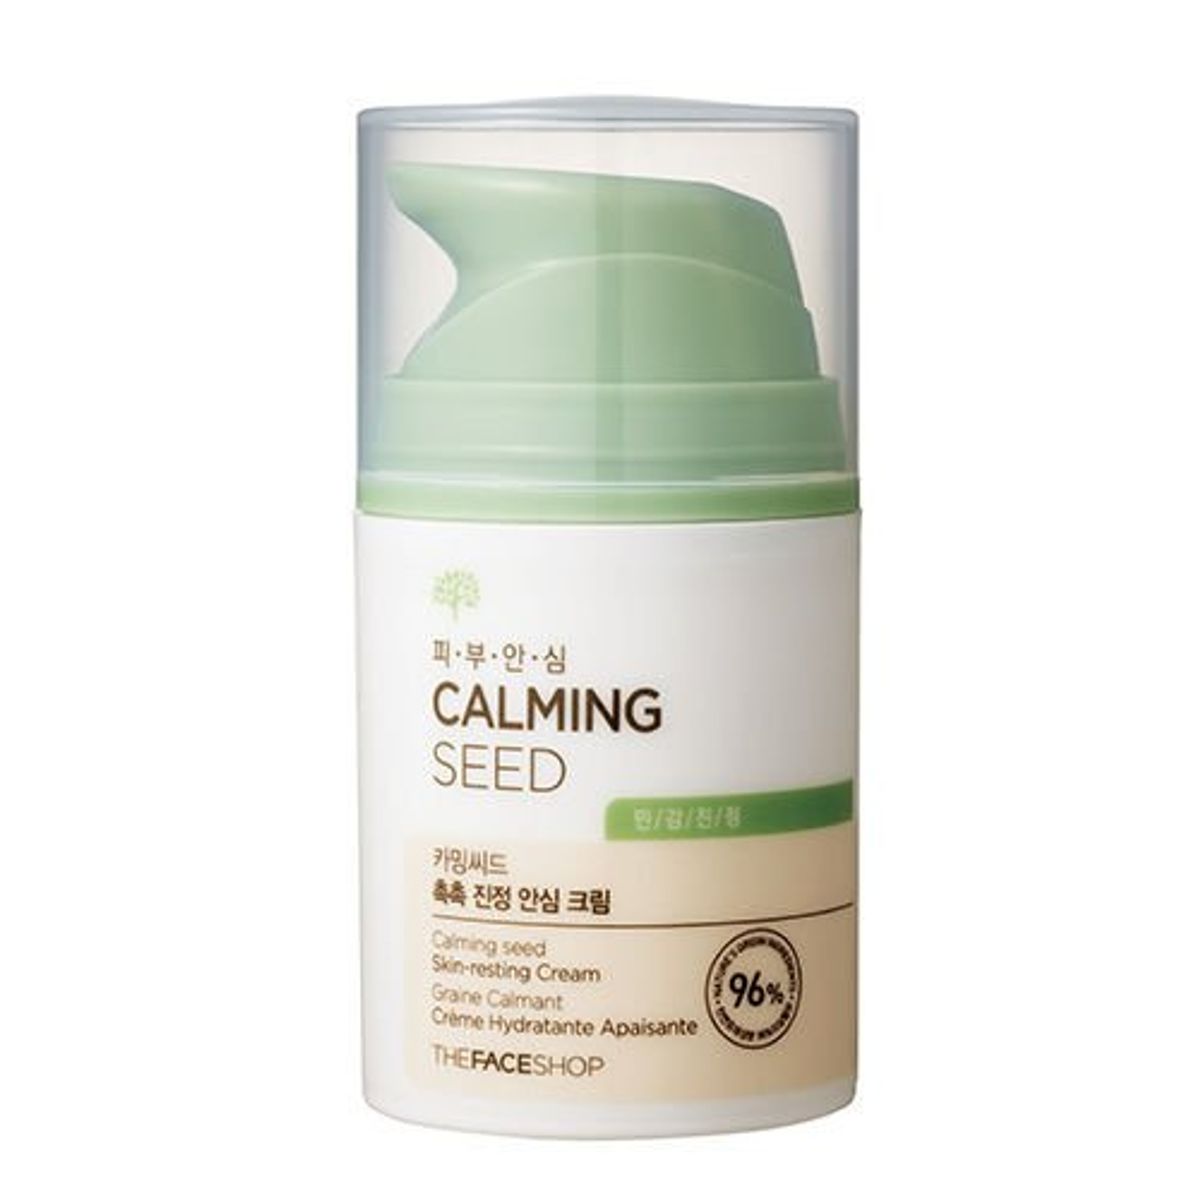 kem-duong-lam-min-da-calming-seed-skin-resting-cream-1